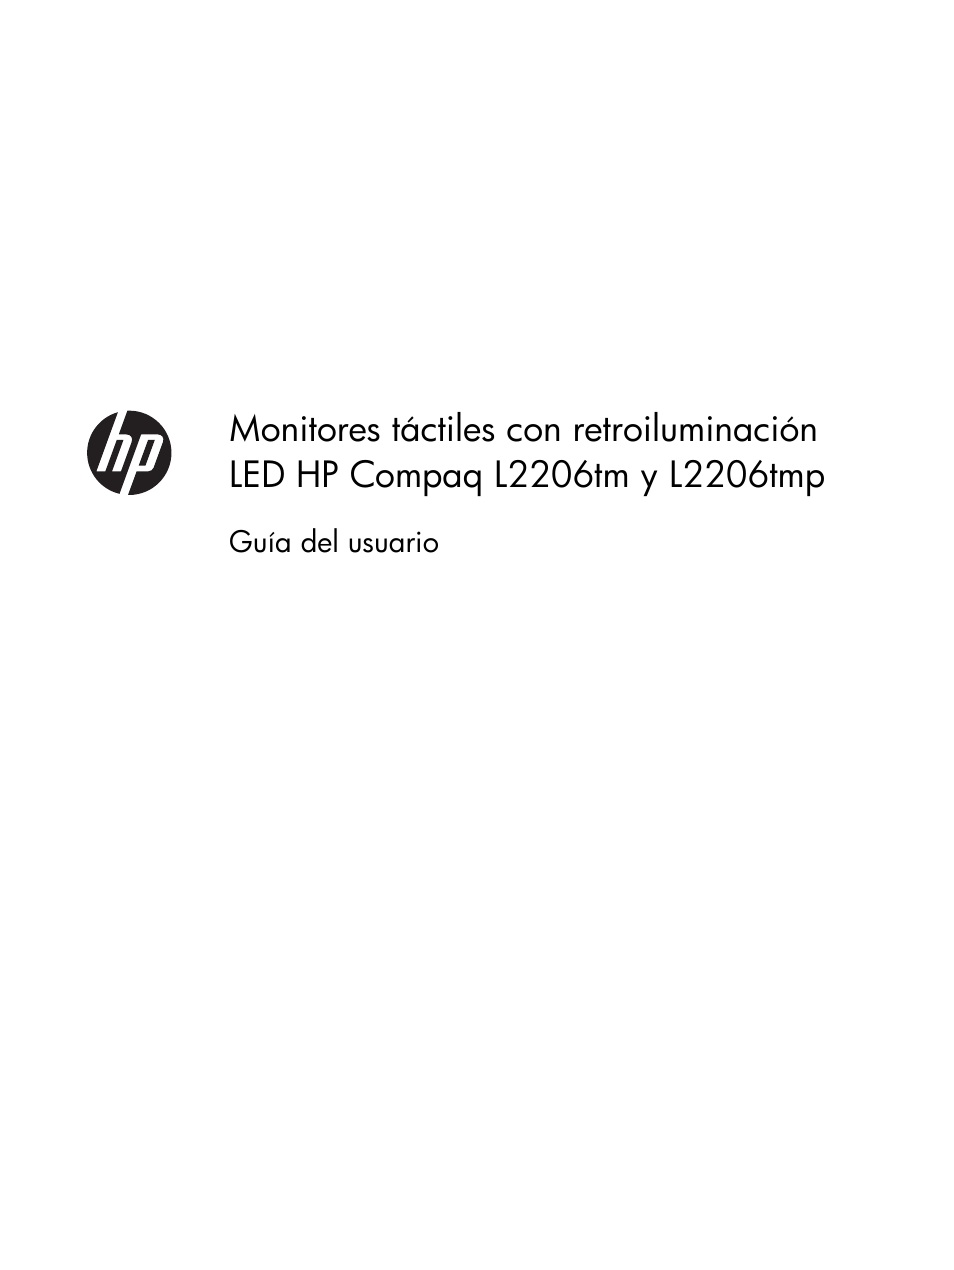 HP Monitor táctil LED retroiluminado HP Compaq L2206tm de 215 pulgadas Manual del usuario | Páginas: 32